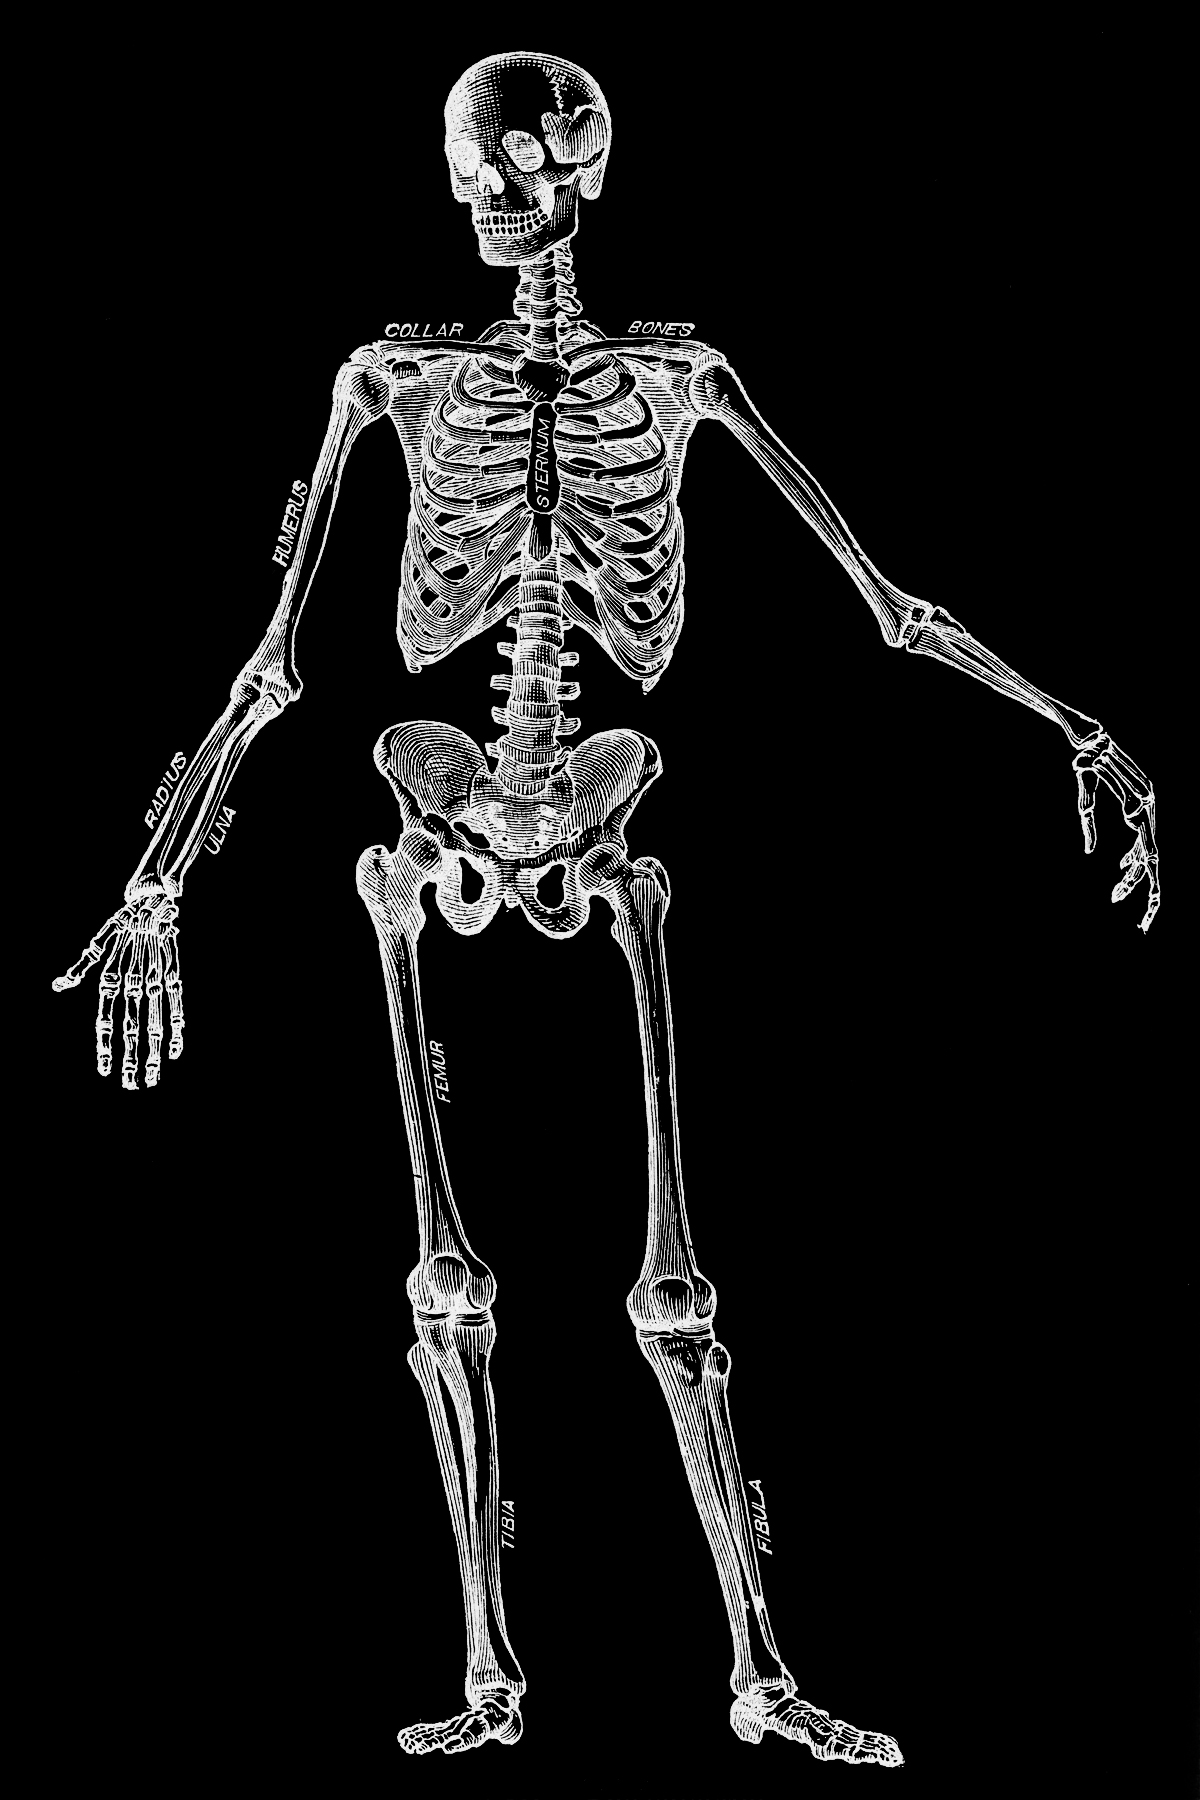 Human skeleton, circa 1911 photo